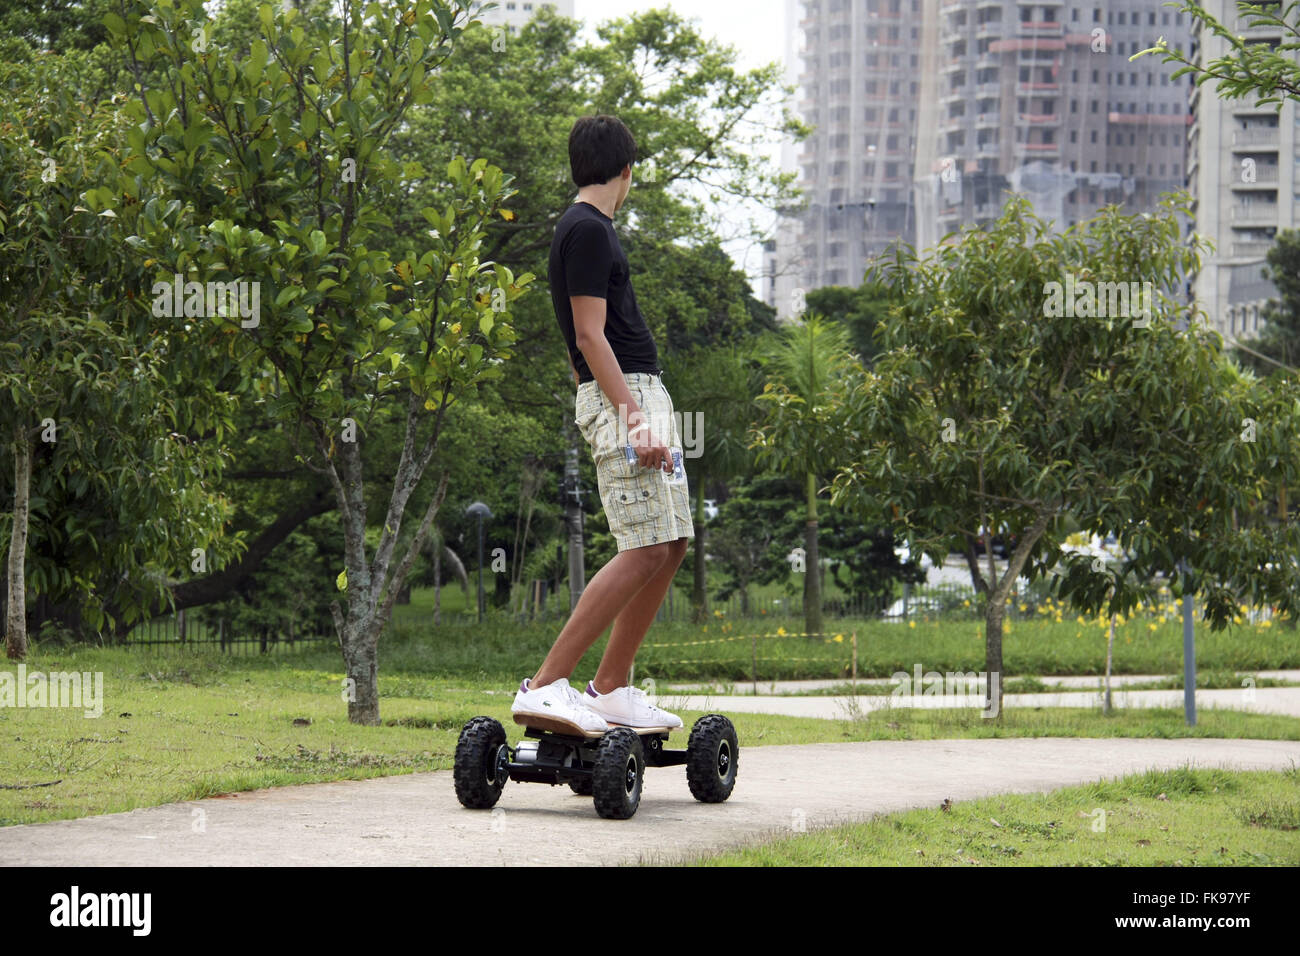 Les jeunes en skateboard motorisé avec People's Park dans le quartier Itaim Bibi Banque D'Images